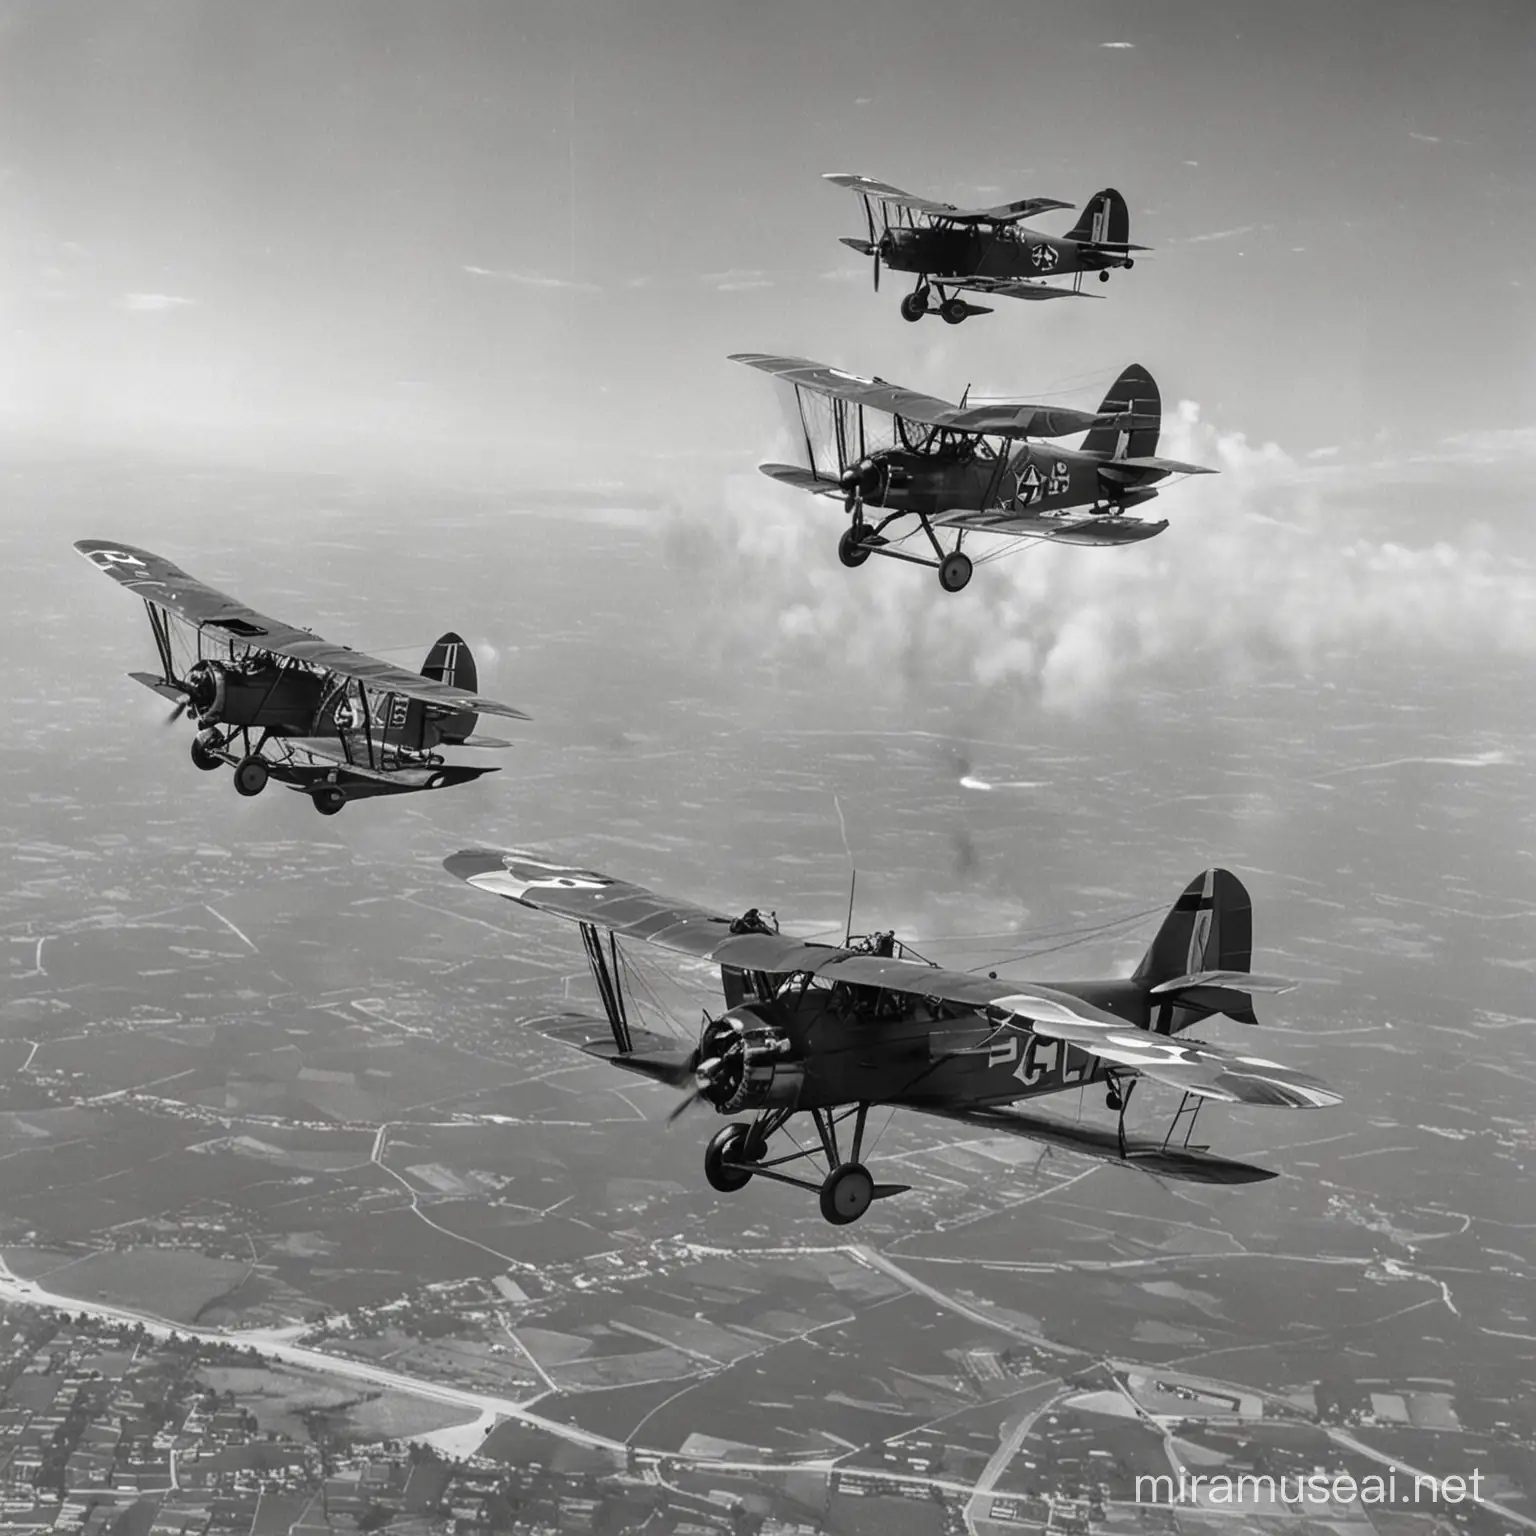 Oito aeronaves voando em formação de cunha;
Sendo as três primeiras: Curtiss Model F com metralhadoras encima das asas.
Atrás deles tem cinco aeronaves Whrigt de obervação.